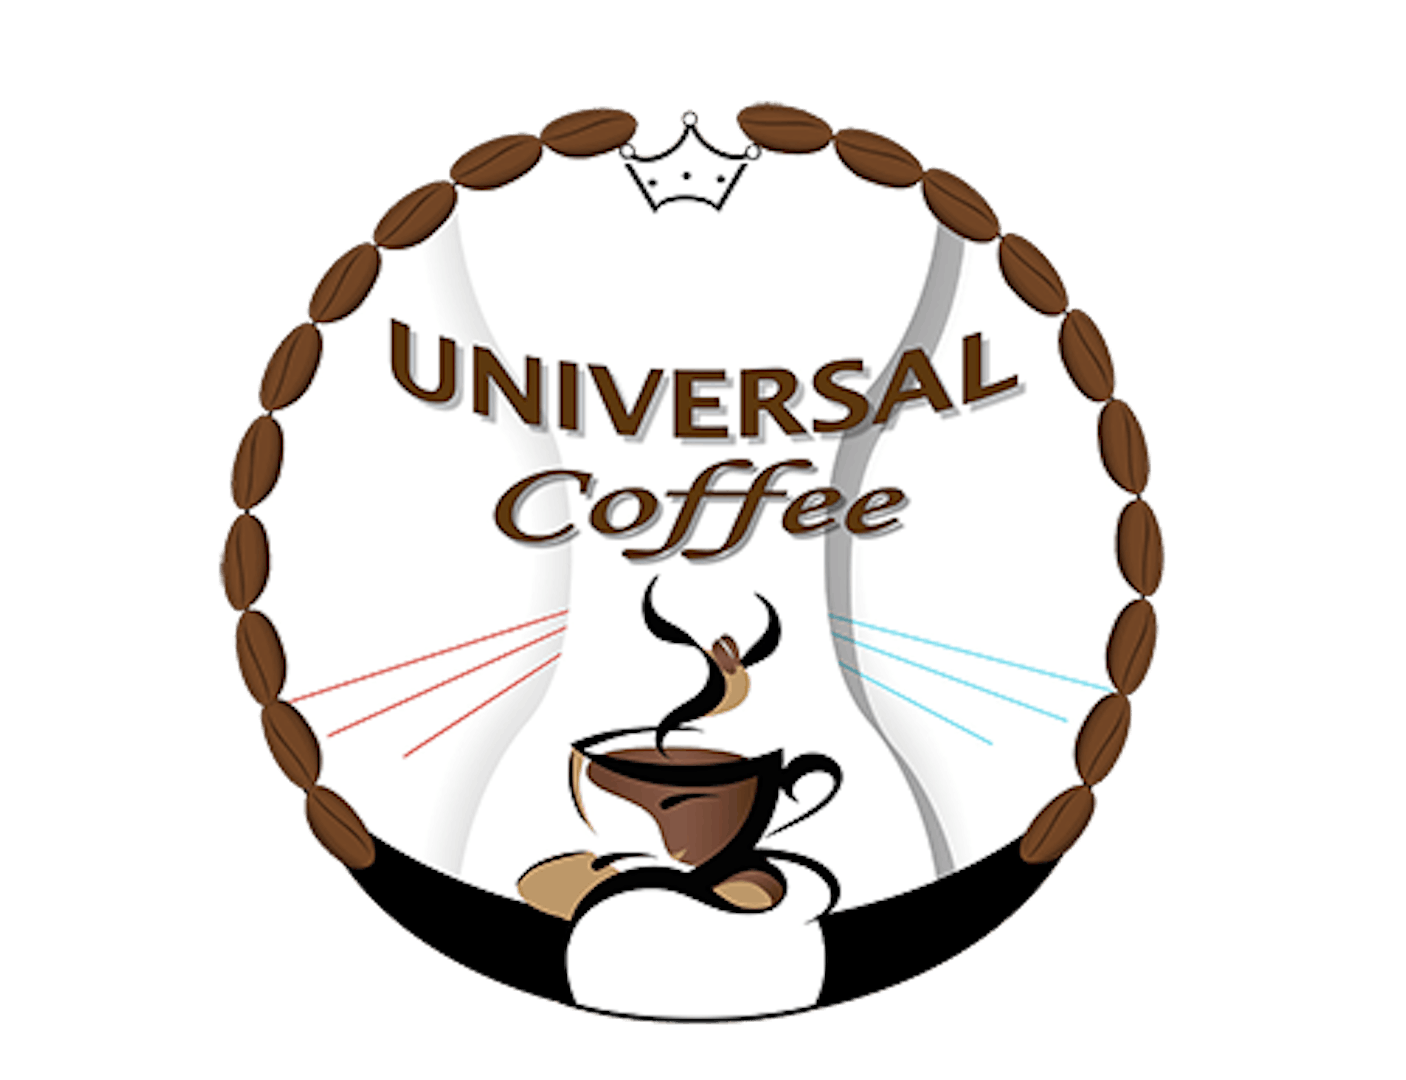 Universal Coffee